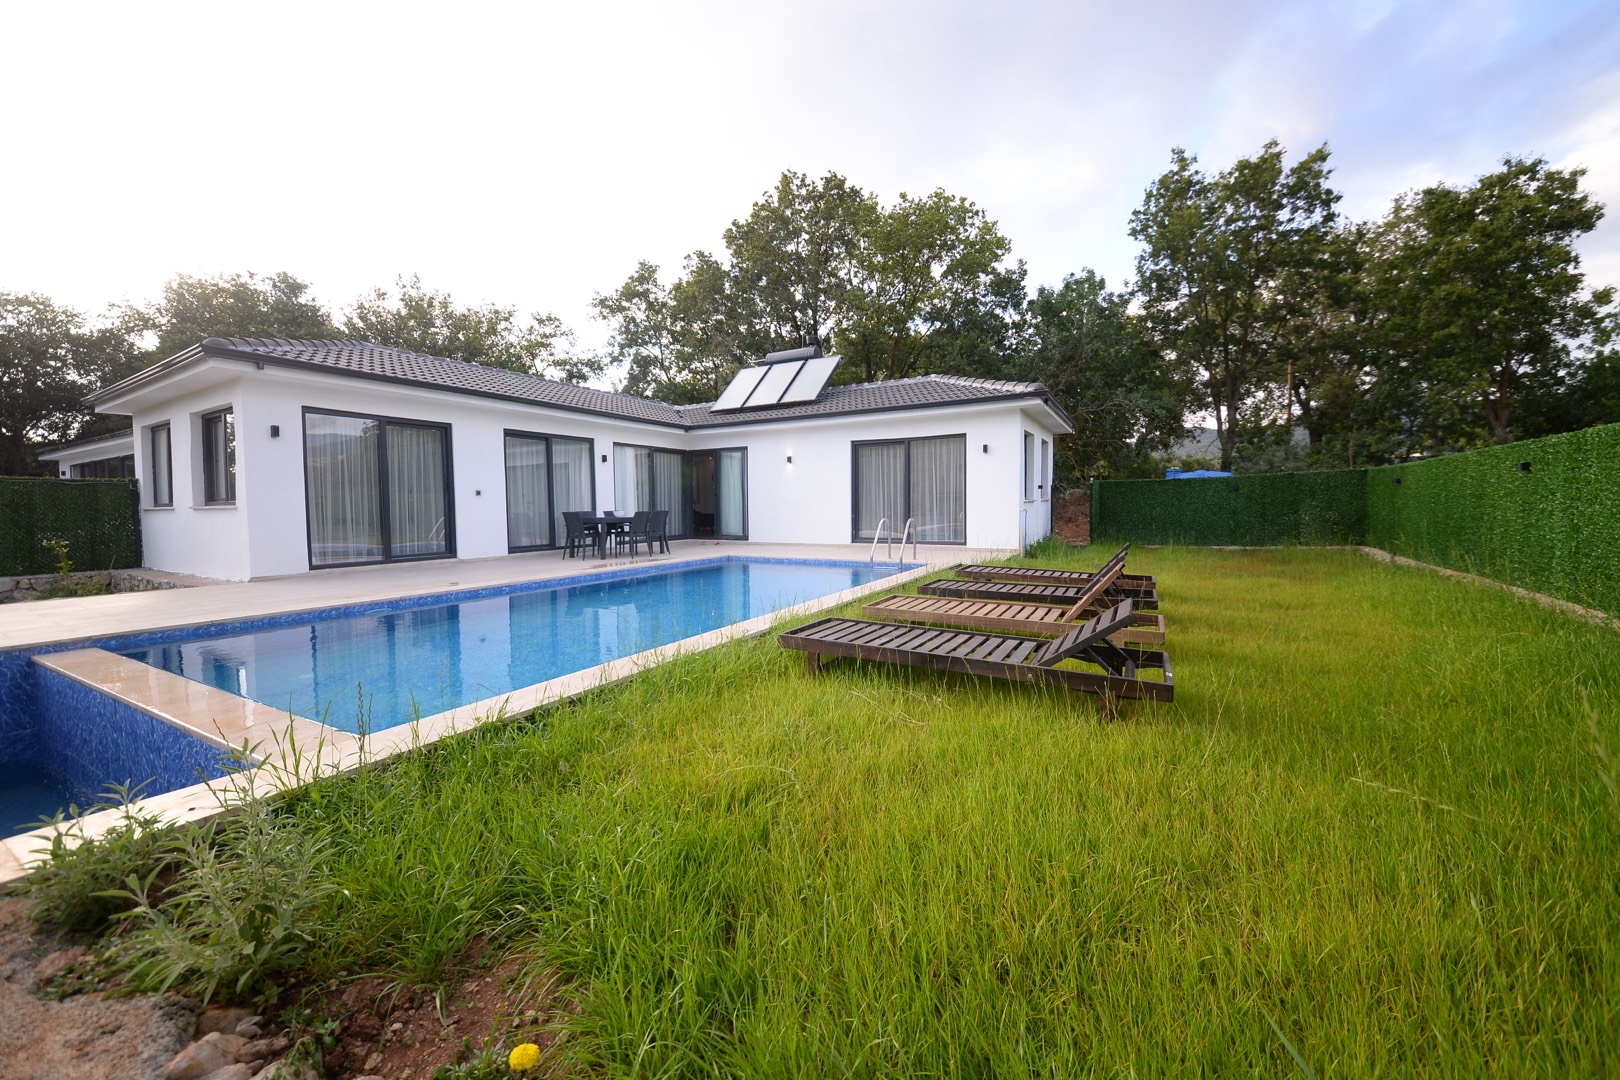 Fethiye Kayaköy'de Yeşillikler İçerisinde, Özel Havuzlu, Modern Tasarımlı Kiralık Villa 